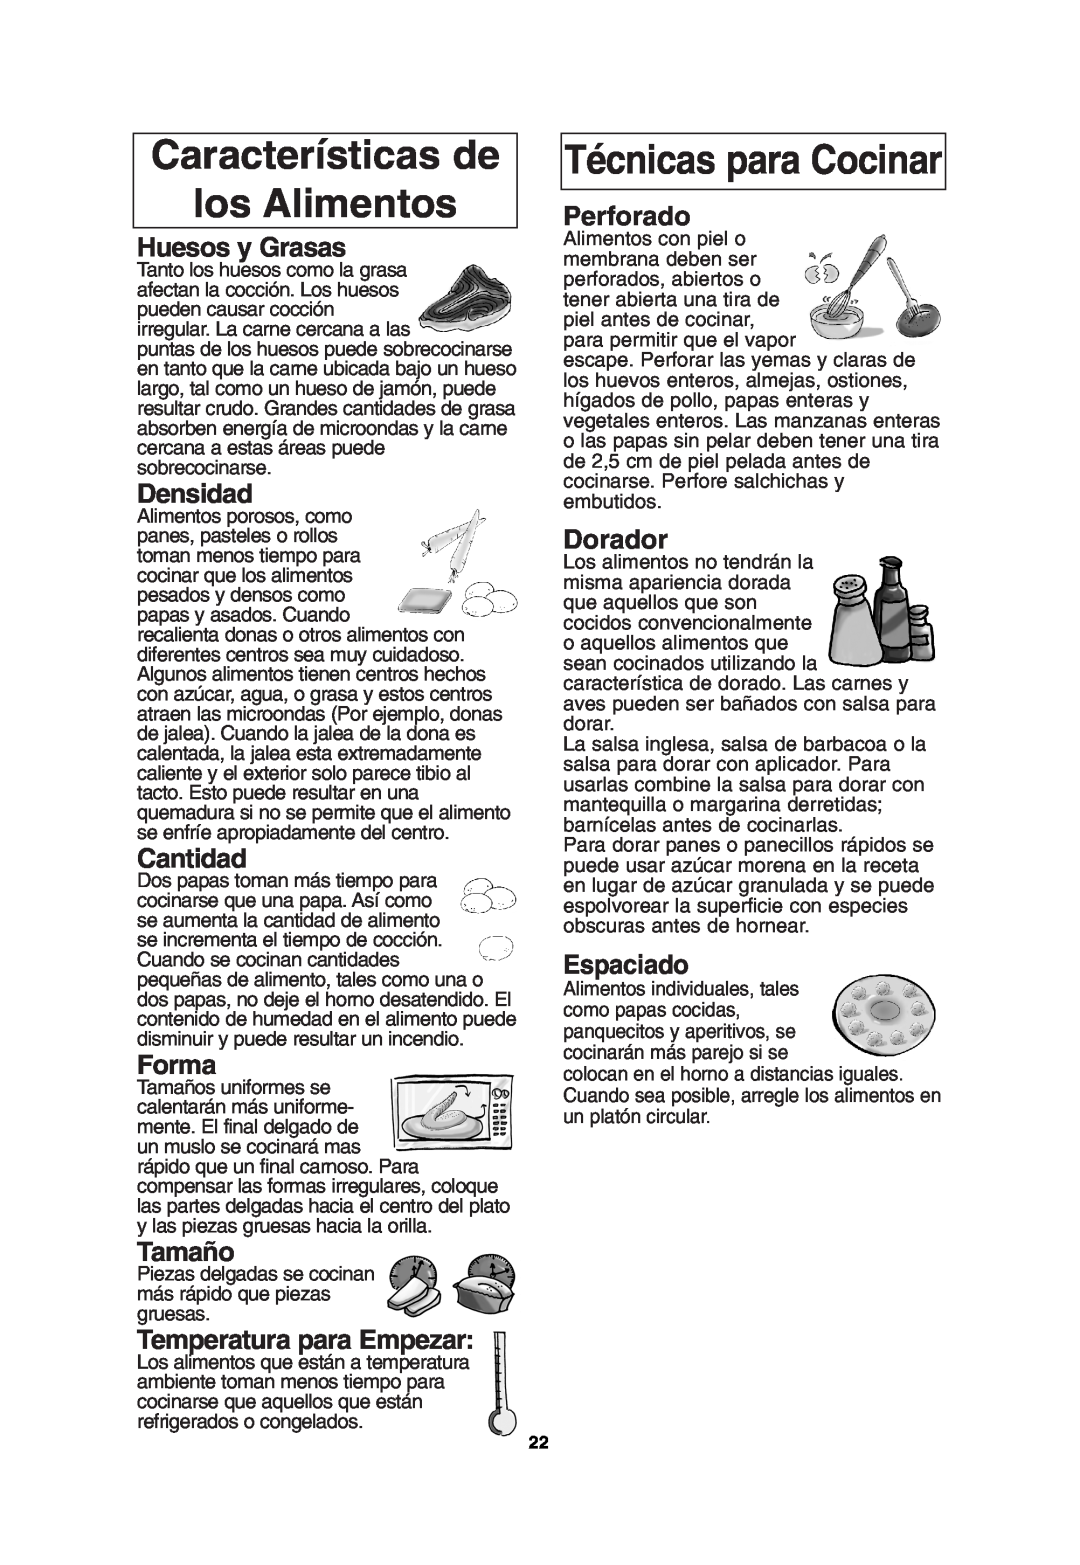 Panasonic NN-T685 Características de los Alimentos, Técnicas para Cocinar, Huesos y Grasas, Densidad, Cantidad, Forma 